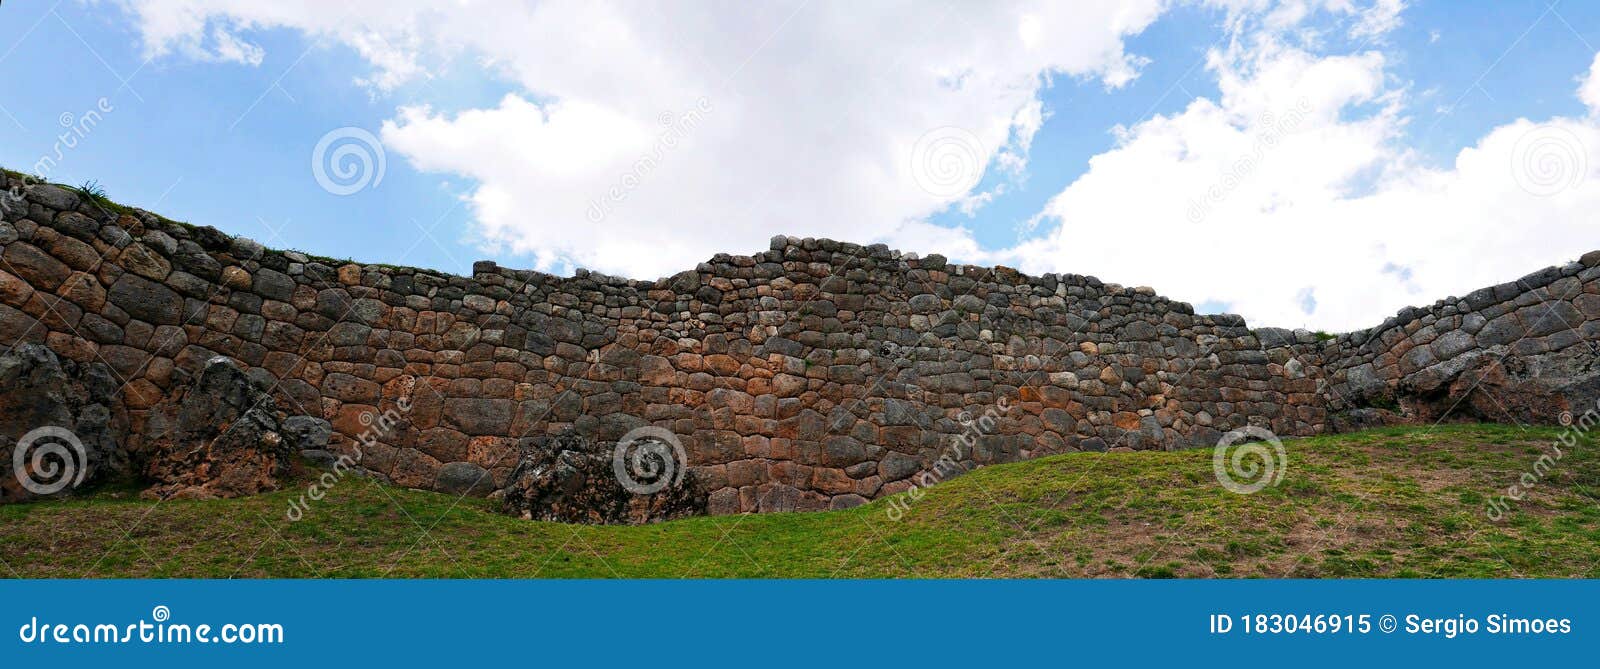 inca ruins wall in peru